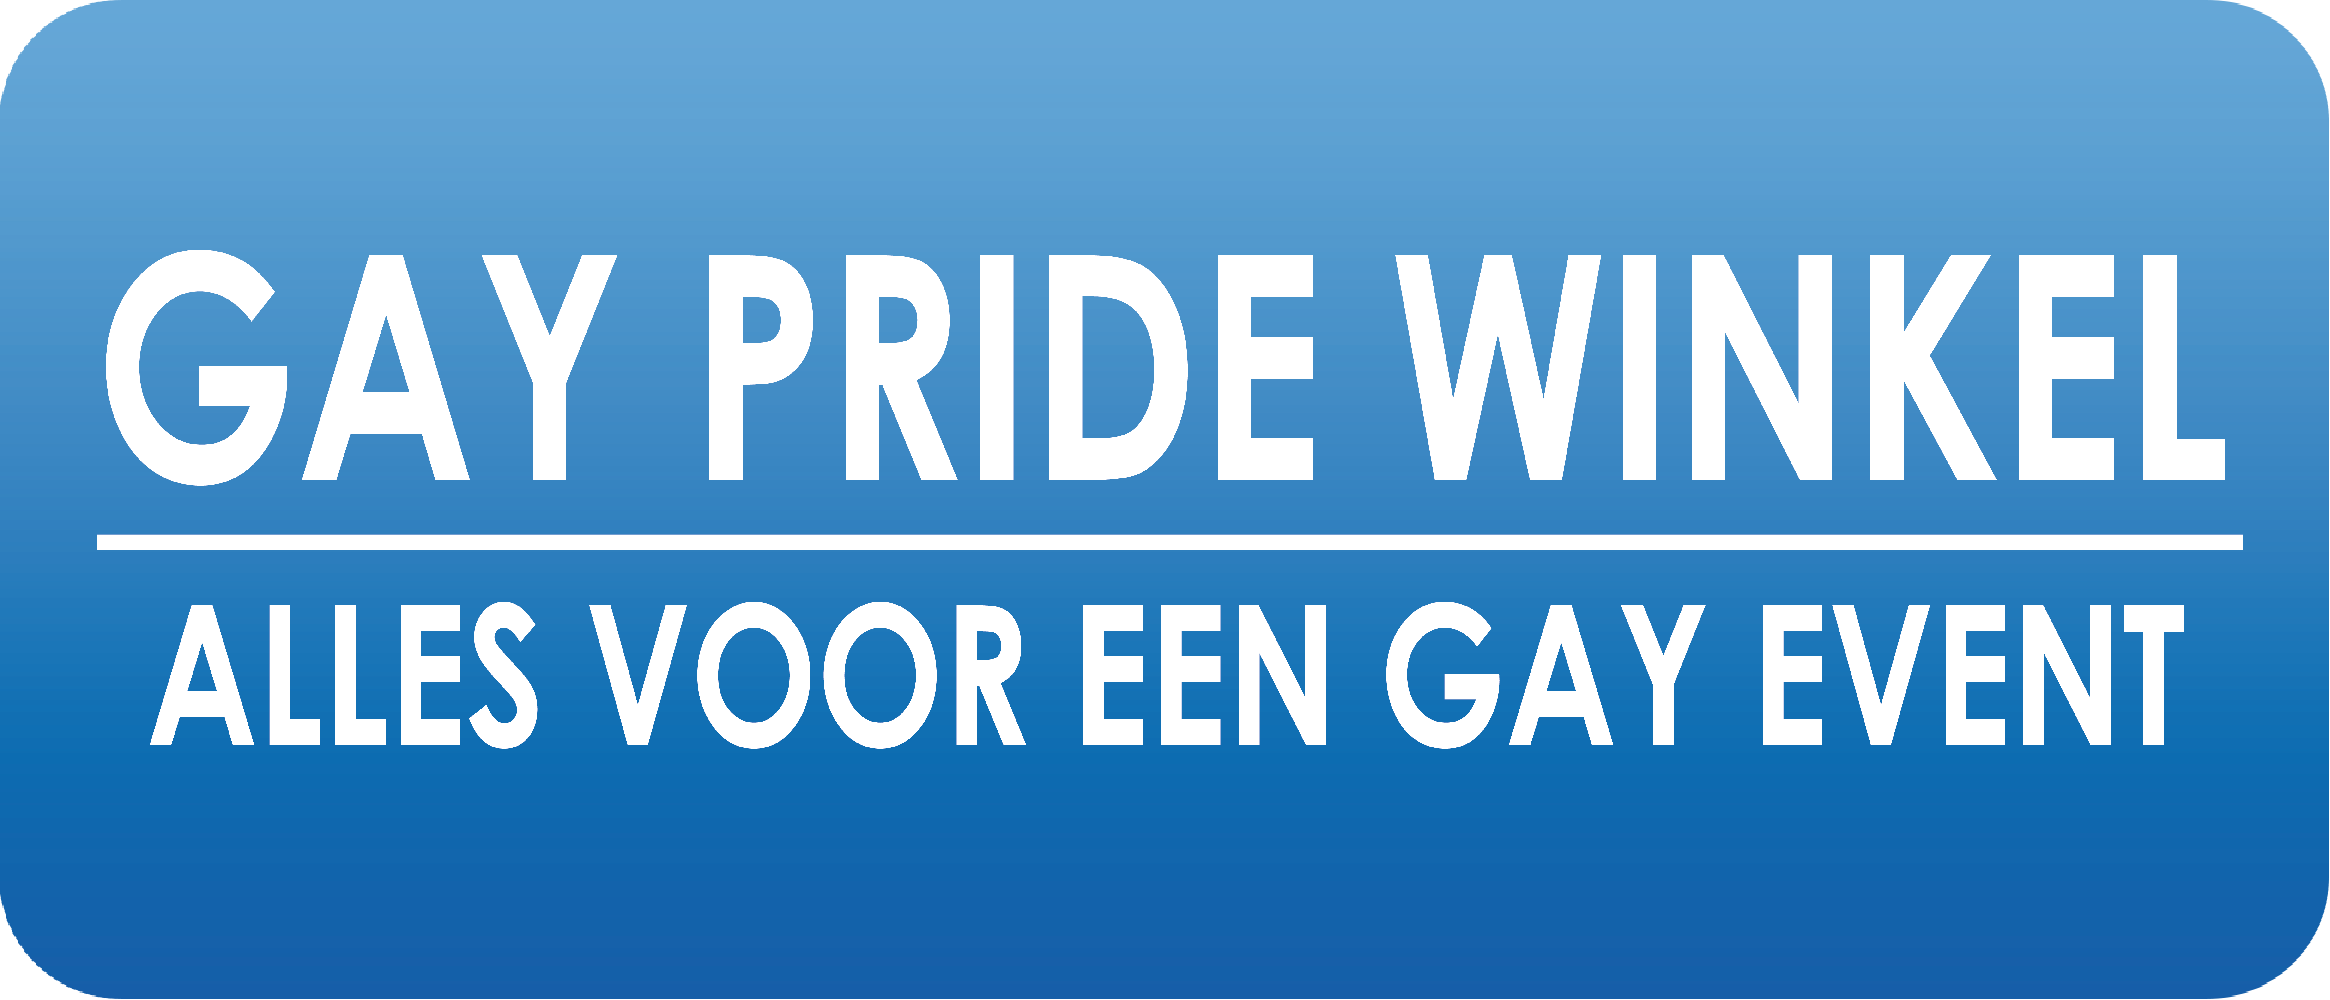 Gay-pride-winkel.nl